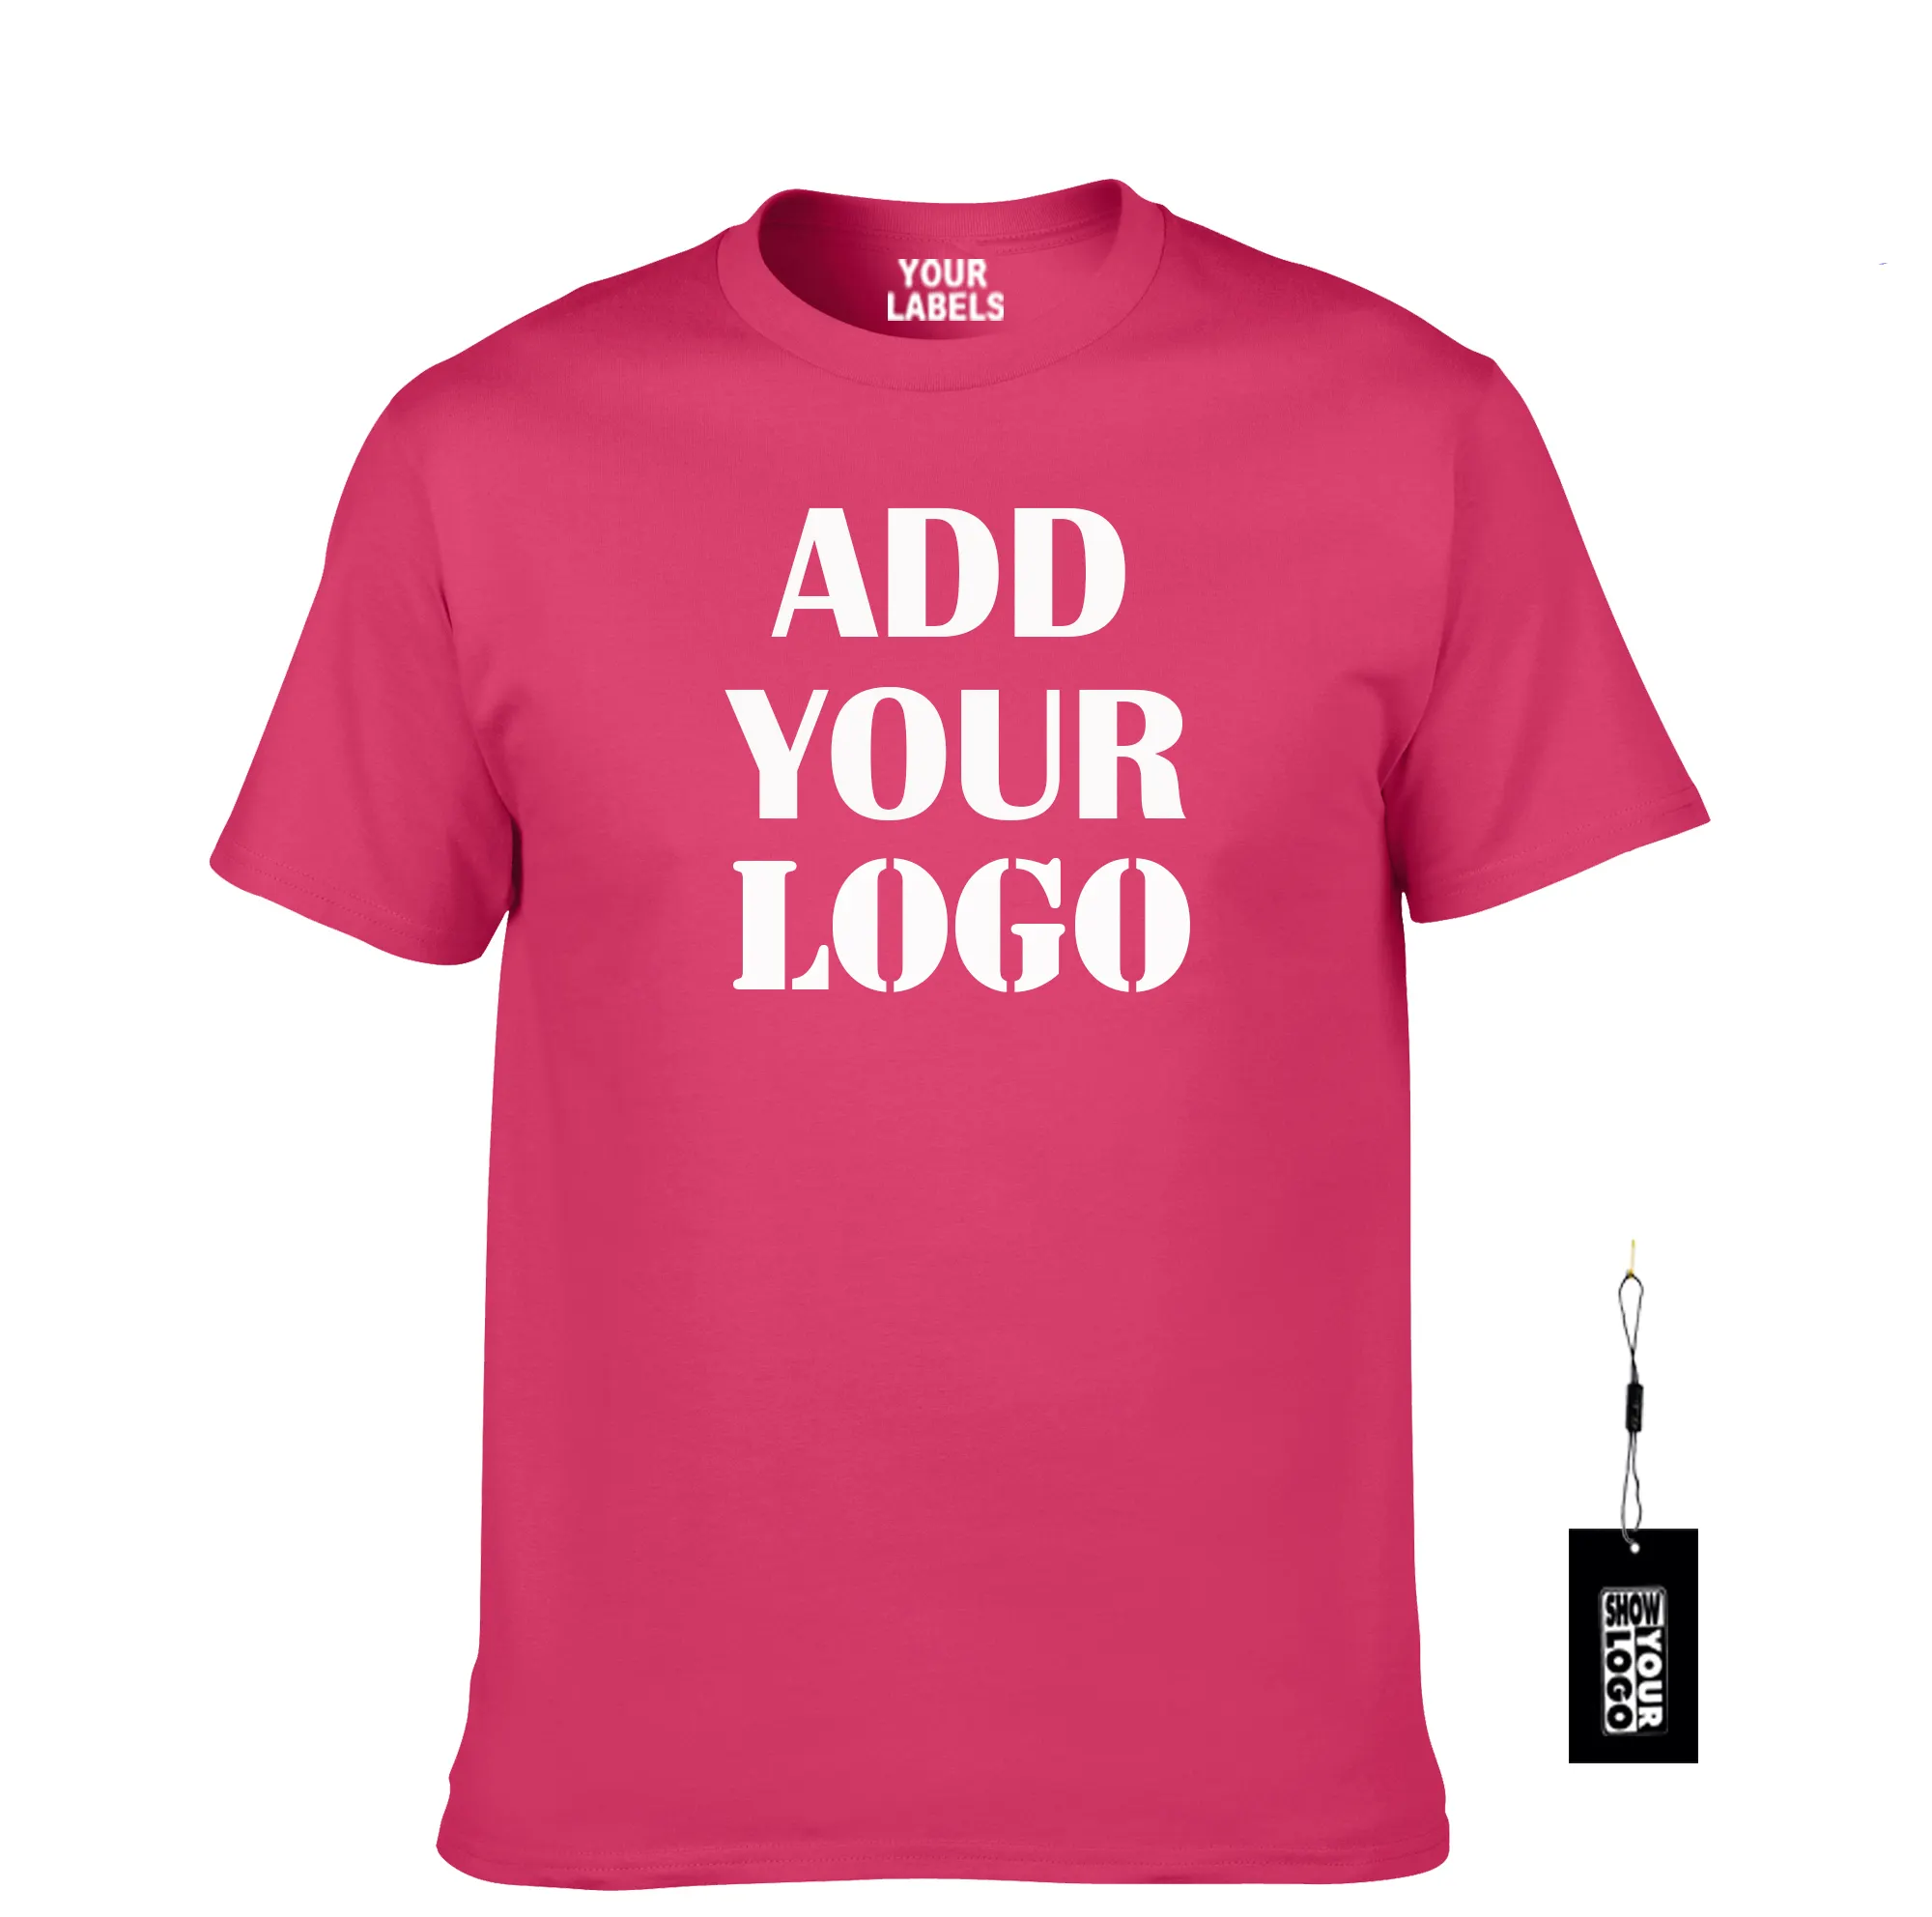 Benutzer definierter Druck T-Shirt Größe S M L XL XXL XXXL 4XL 5XL Ihr Logo drucken, kostenlose Innen etiketten, benutzer definierte Drucke ti ketten mischen Größe und Farben